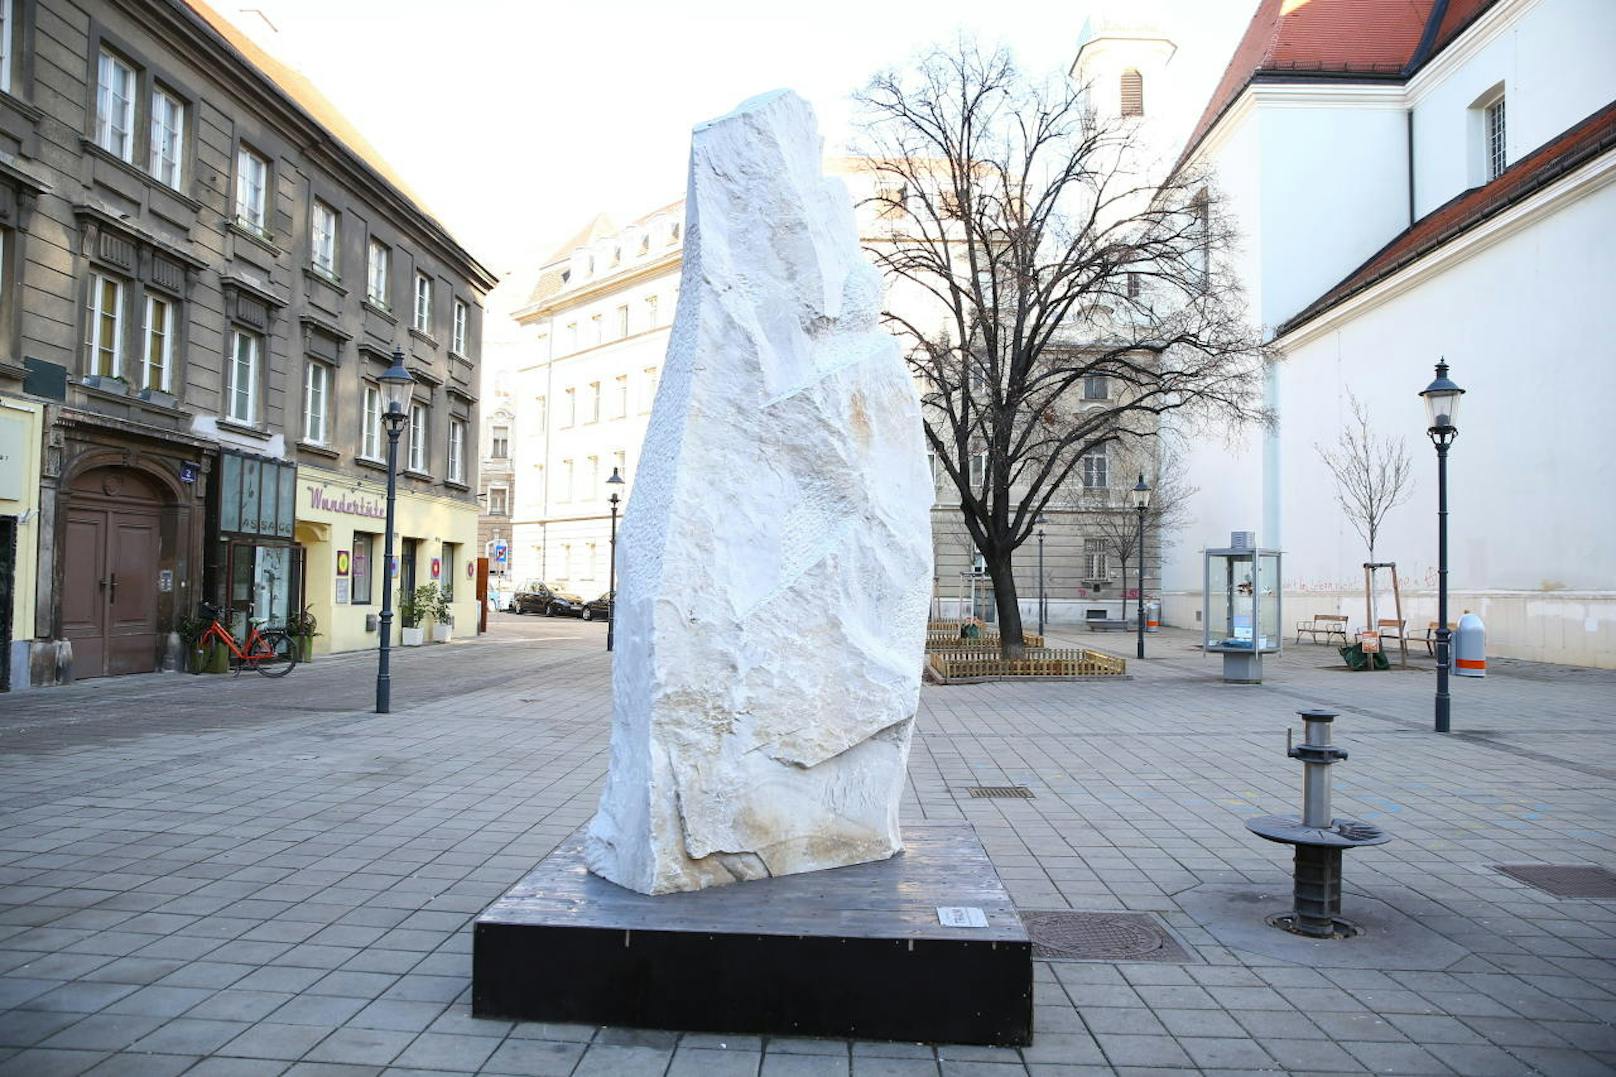 Die Skulptur "Traum" mitten auf dem Karmeliterplatz erregt die Gemüter. Im Grätzel nennt man sie nur mehr "das Phallus-Symbol".